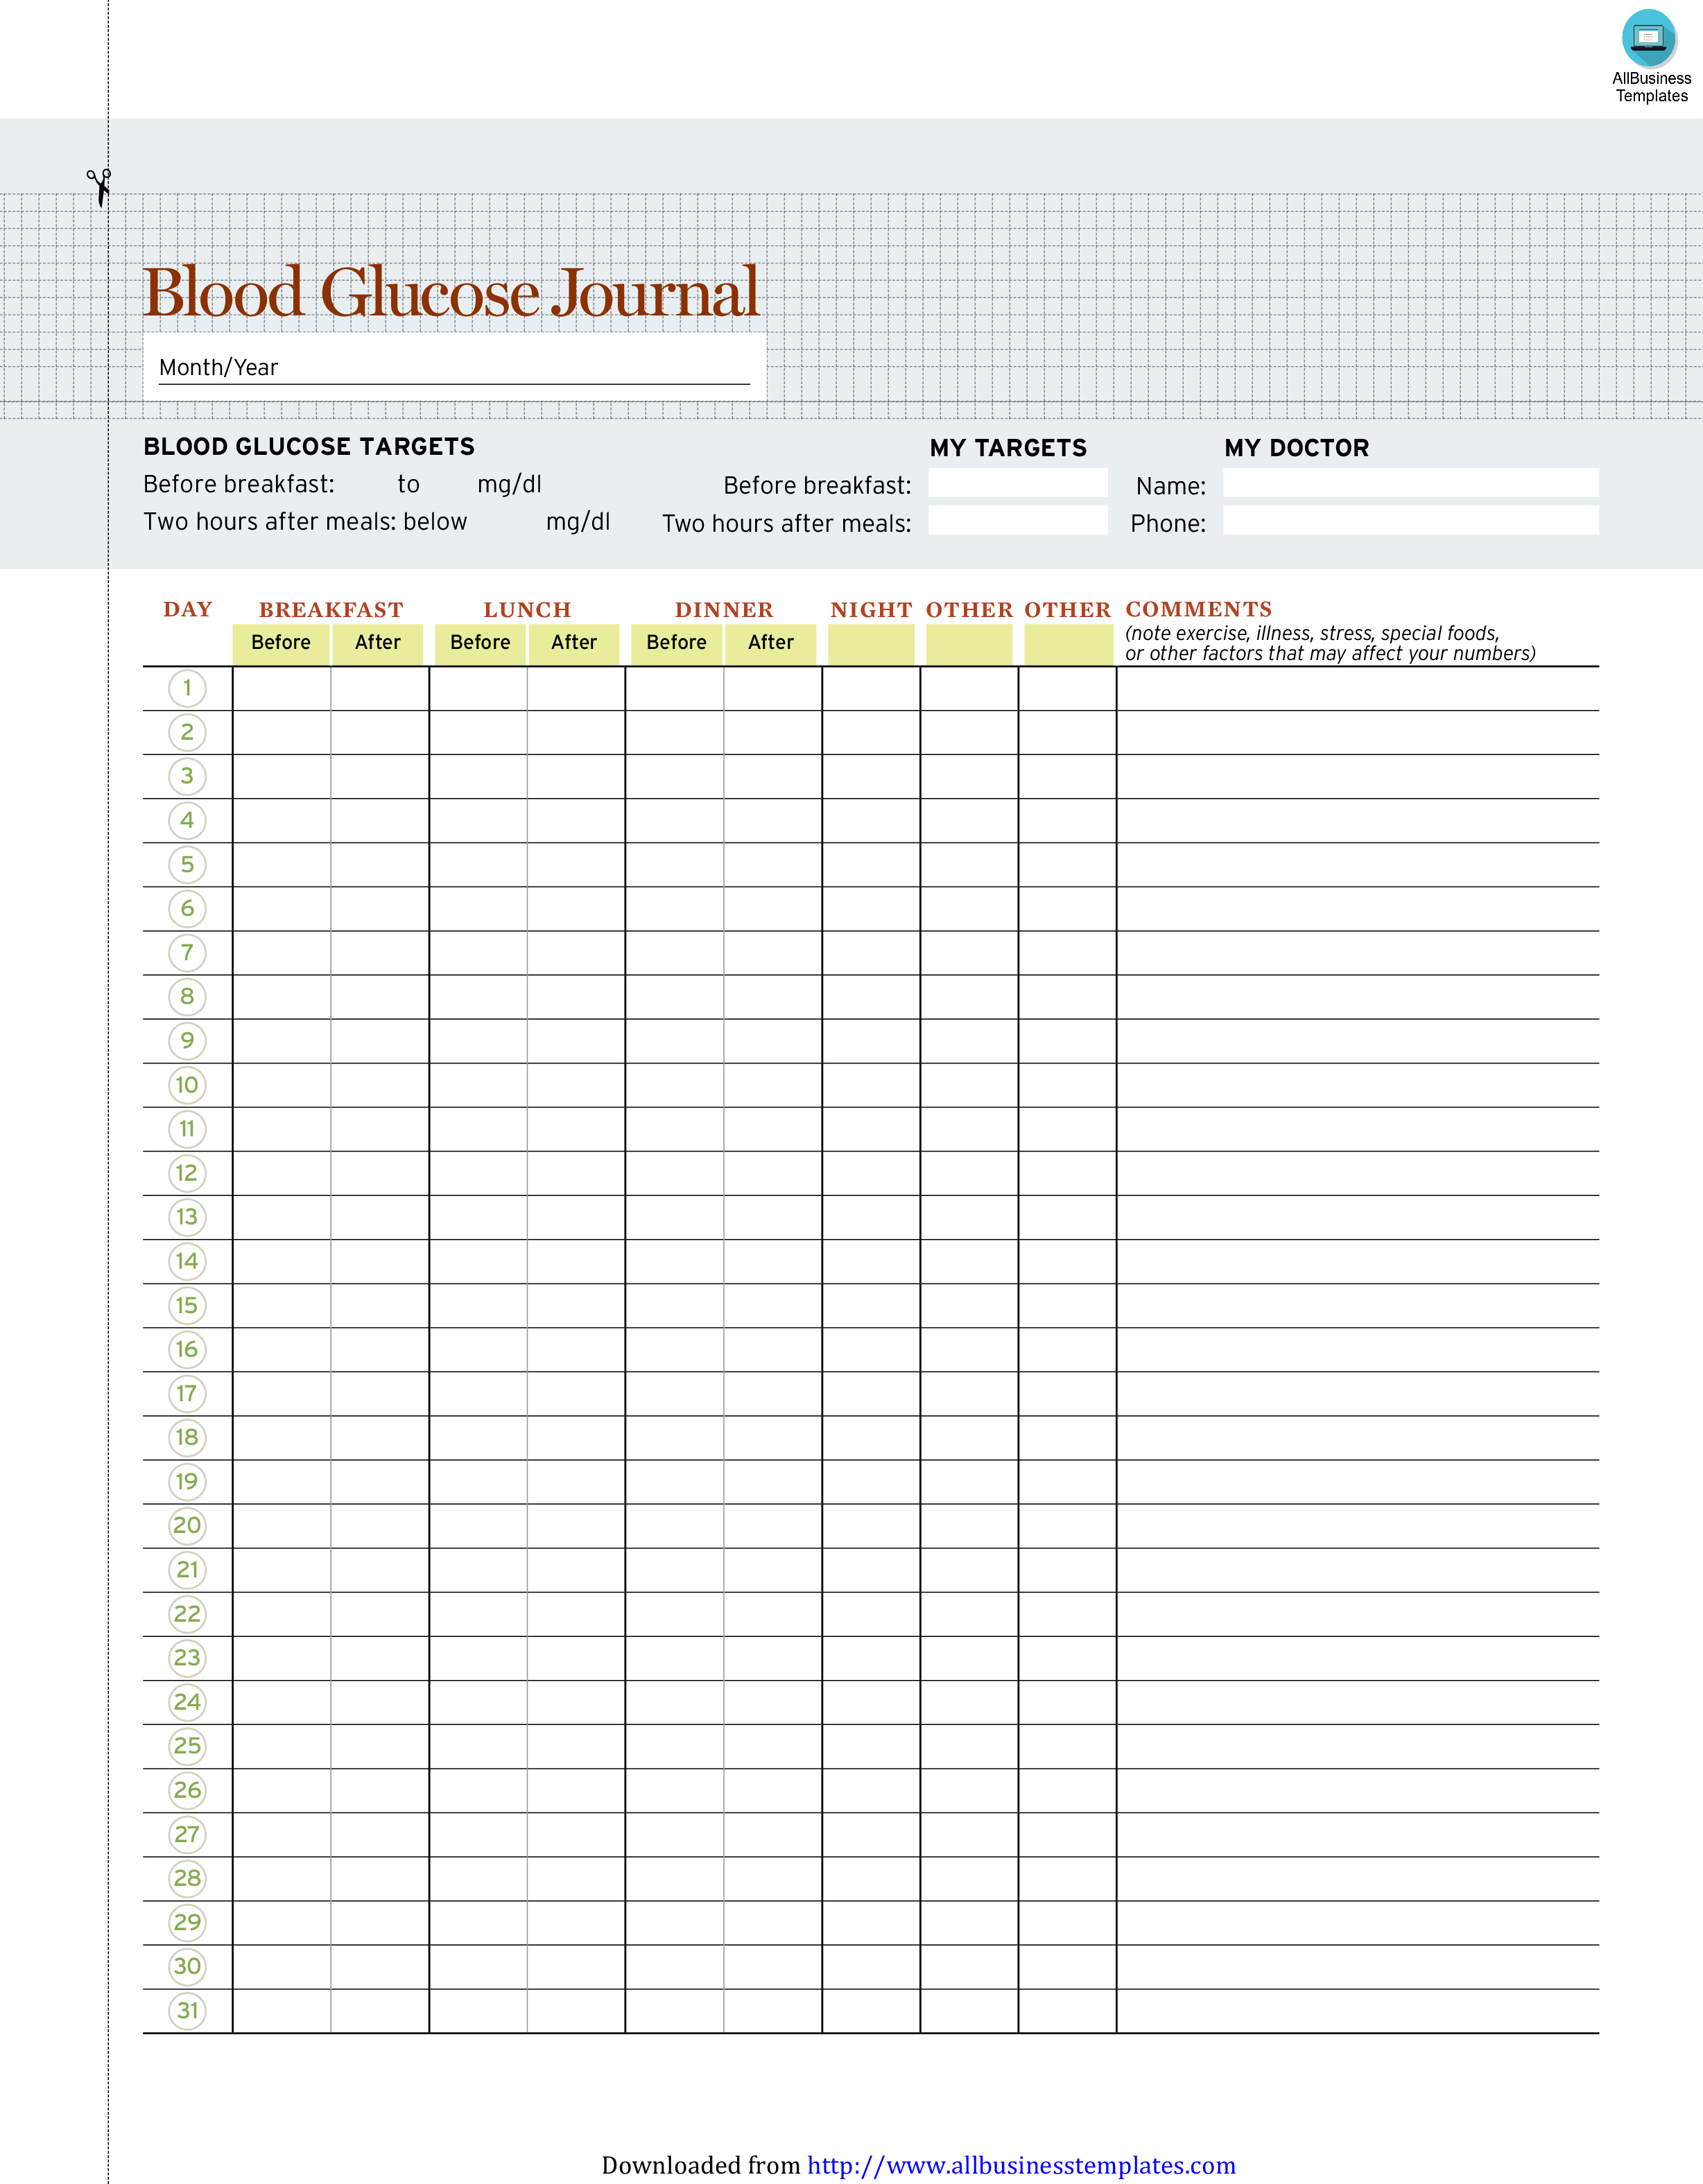 Blood Glucose Journal 模板